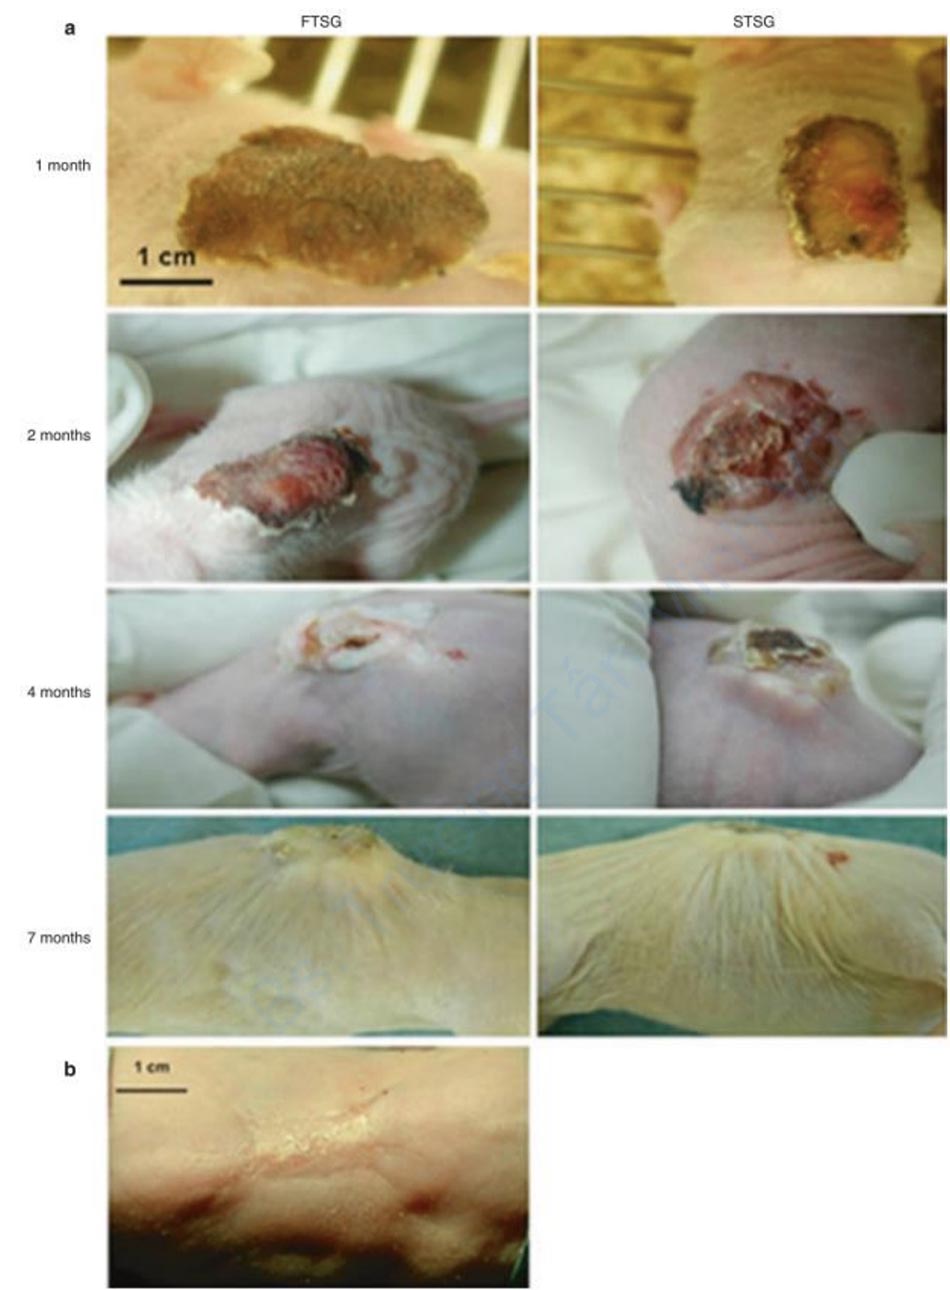 Hình 3.10 Cả mảnh ghép da người có độ dày đầy đủ (FTSG) và độ dày tách lớp (STSG) đều được ghép vào lưng của con chuột nude và sự tiến triển của sự hình thành sẹo được ghi lại vào thời điểm 1 tháng, 2 tháng, 4 tháng và 7 tháng sau ghép (a). Mảnh da chuột cũng được ghép tuy nhiên không hình thành sẹo (b) [133].